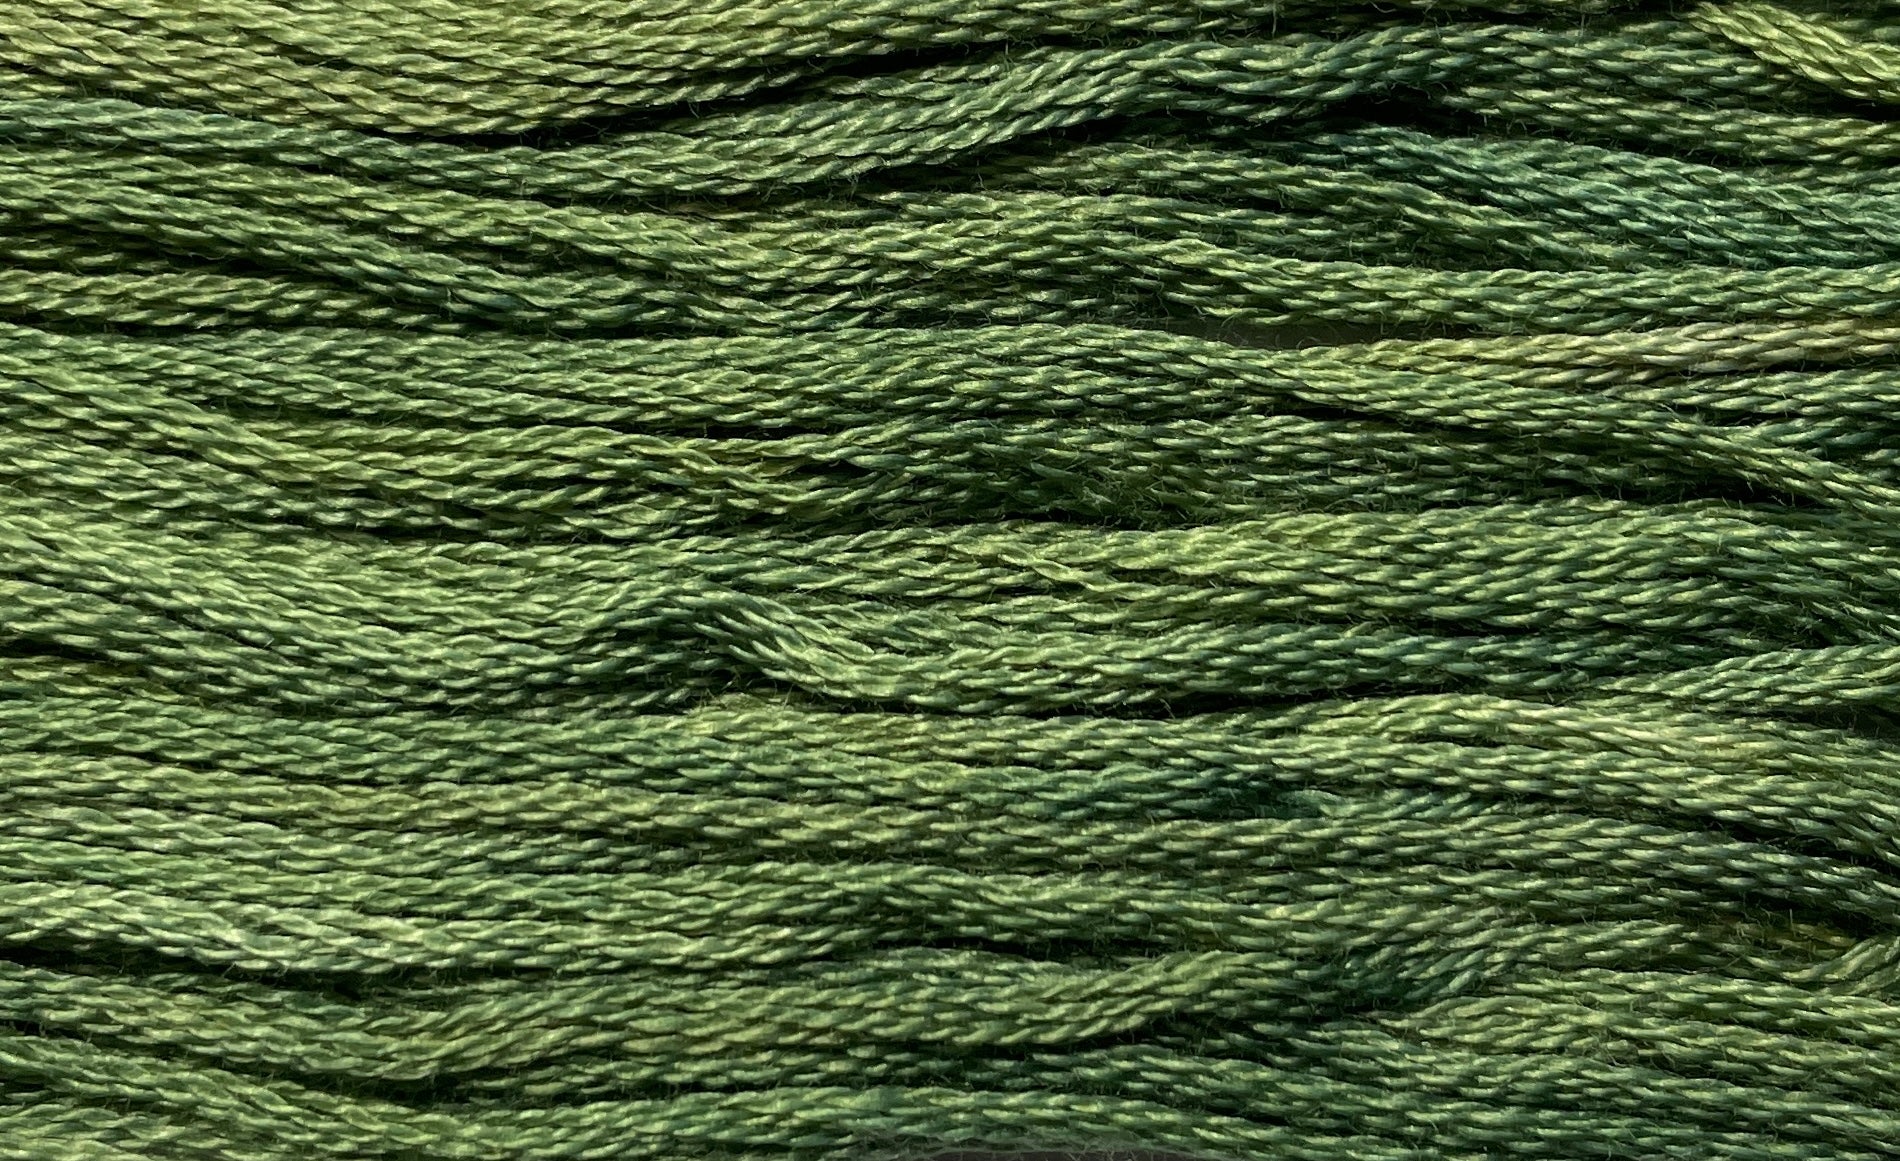 Bayberry - Gentle Arts Cotton Thread - 5 yard Skein - Cross Stitch Floss, Thread & Floss, Thread & Floss, The Crafty Grimalkin - A Cross Stitch Store